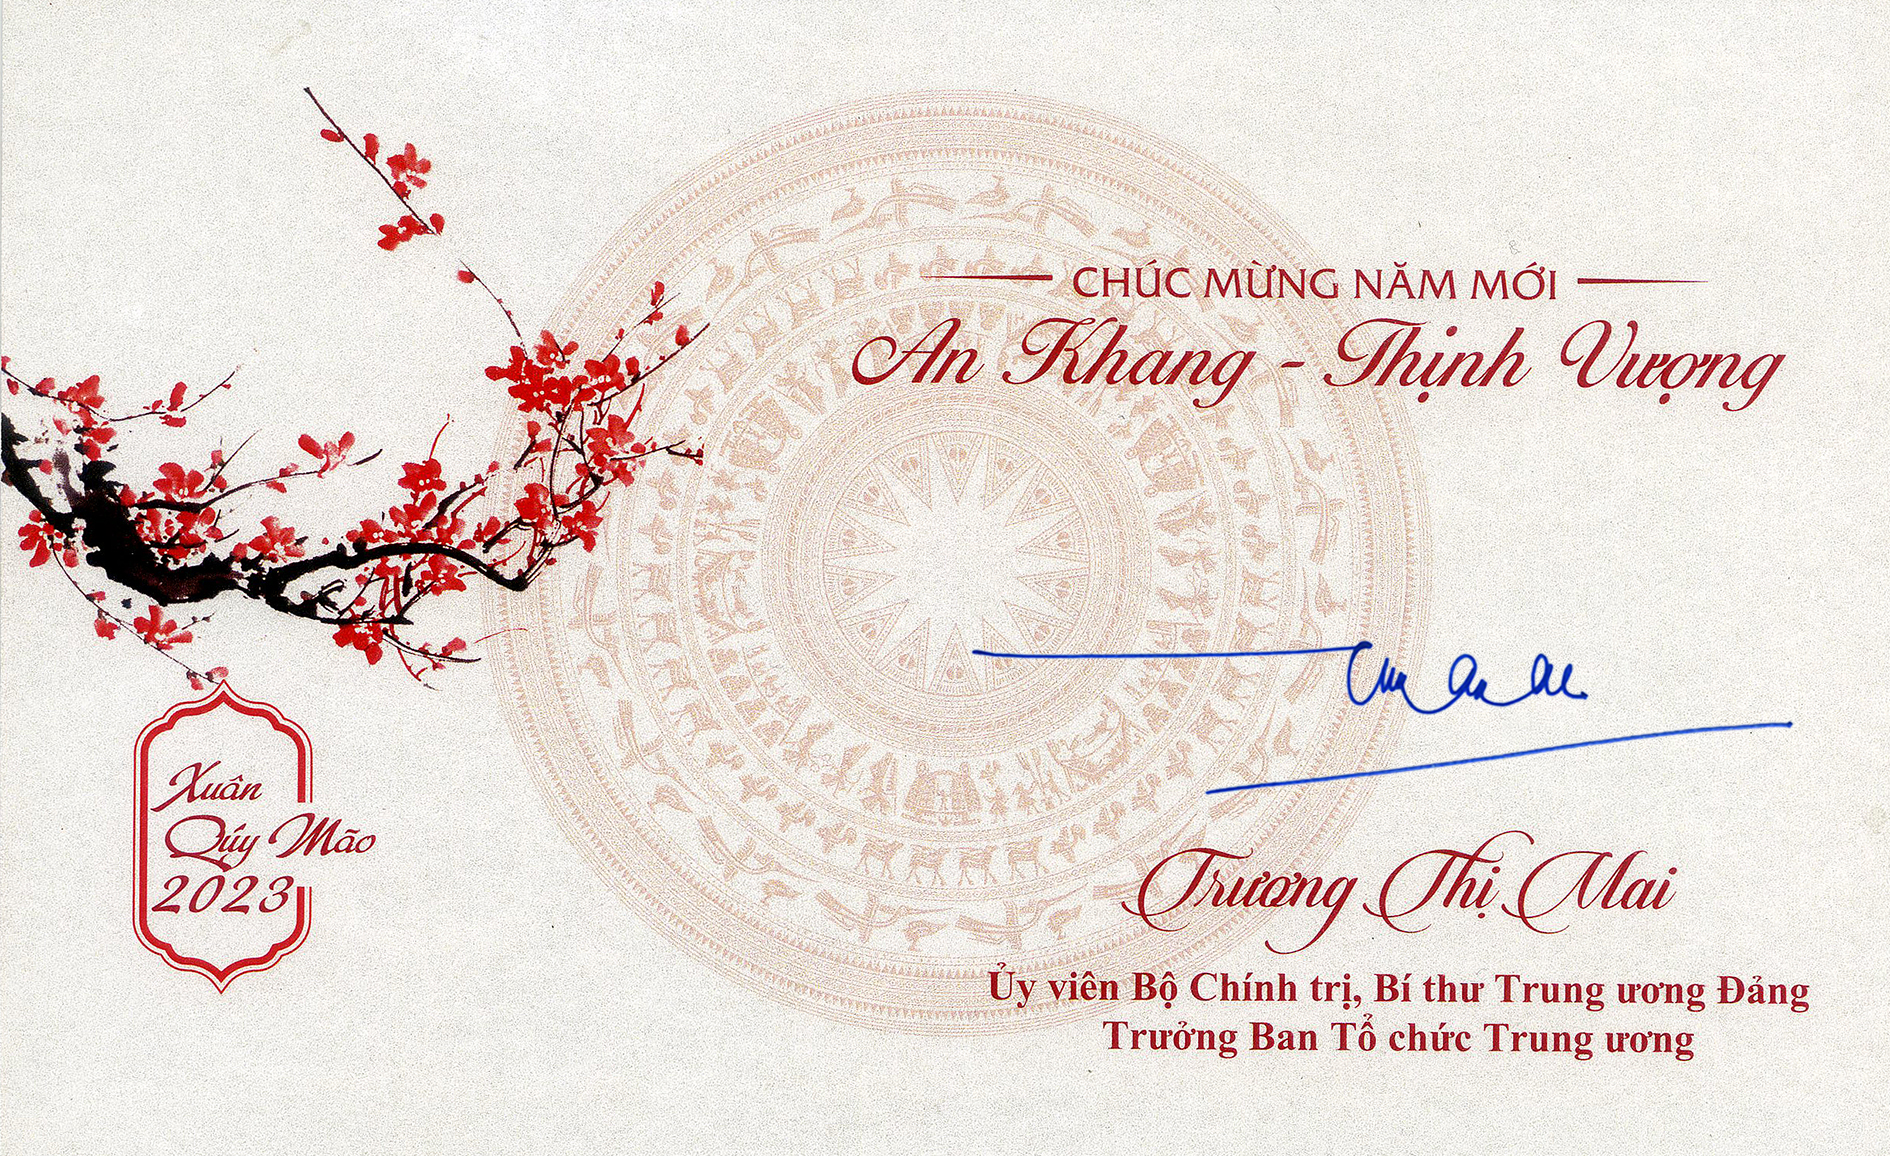 Thiệp chúc mừng năm mới của Trưởng Ban Tổ chức Trung ương Trương Thị Mai